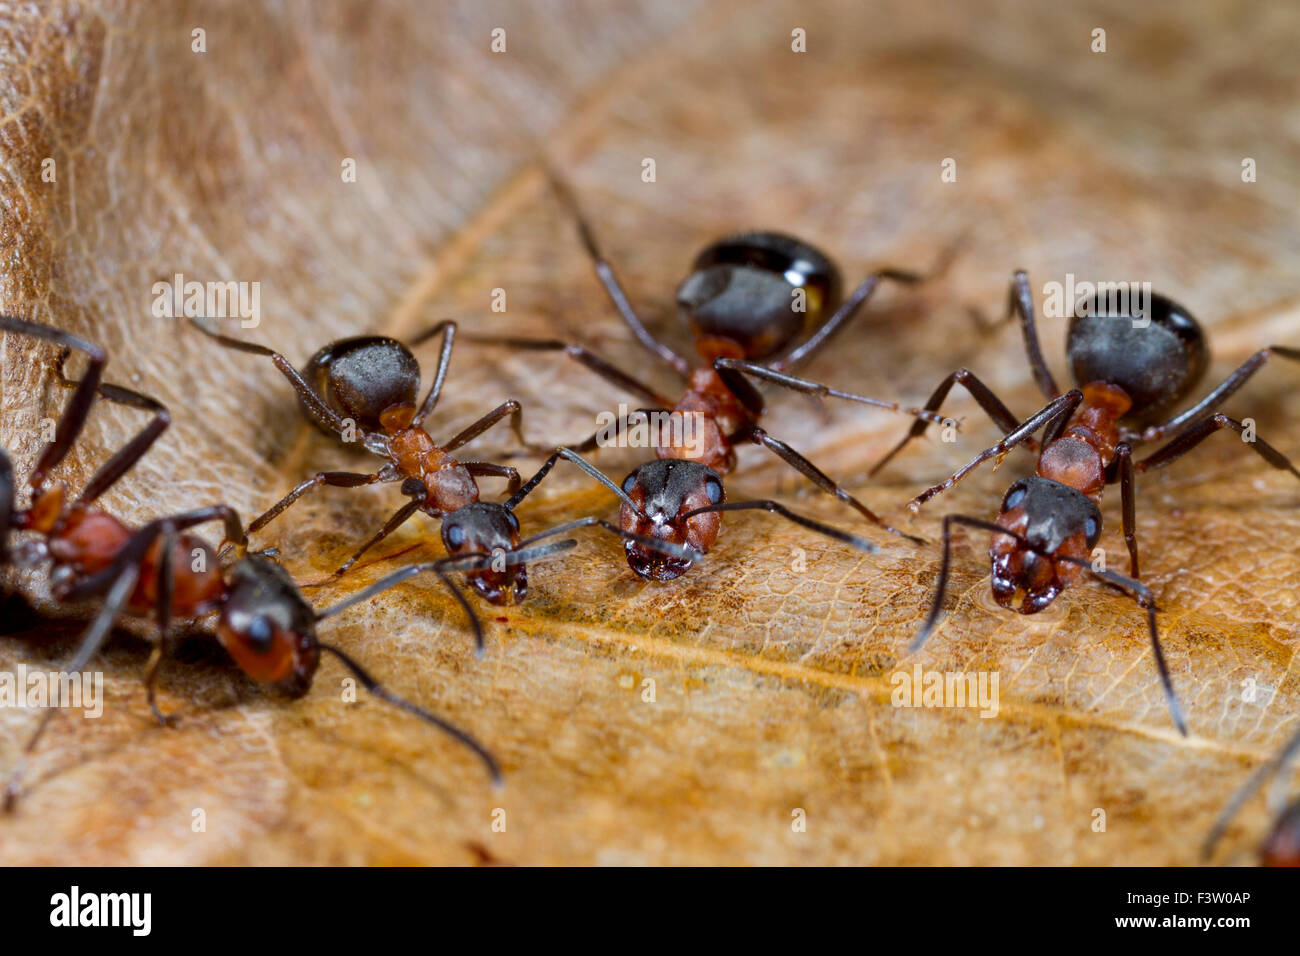 Red Wood Ameisen (Formica Rufa) Erwachsene Arbeitnehmer aus Zucker trinken Wasser Köder. Shropshire, England. April. Stockfoto